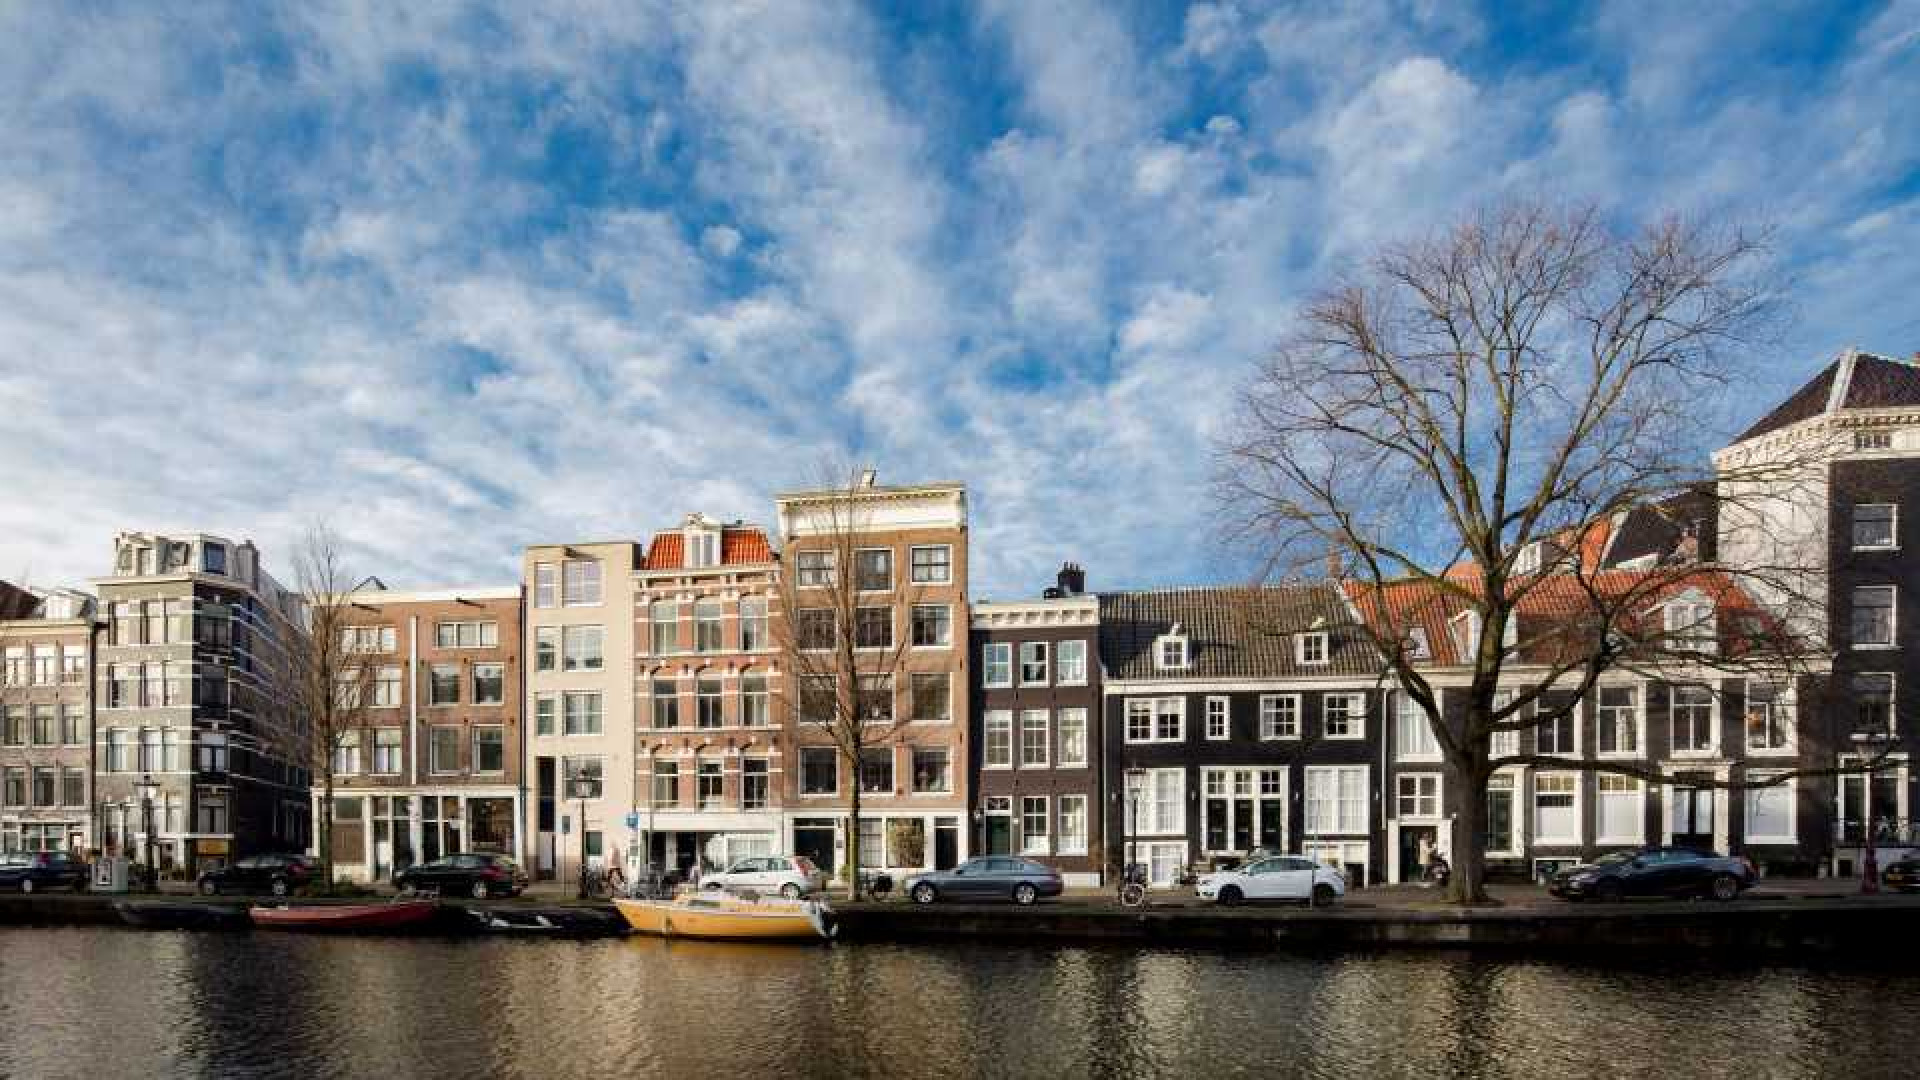 Youp van 't Hek legt miljoenen neer voor dit schitterend grachtenpand in Amsterdam. 2